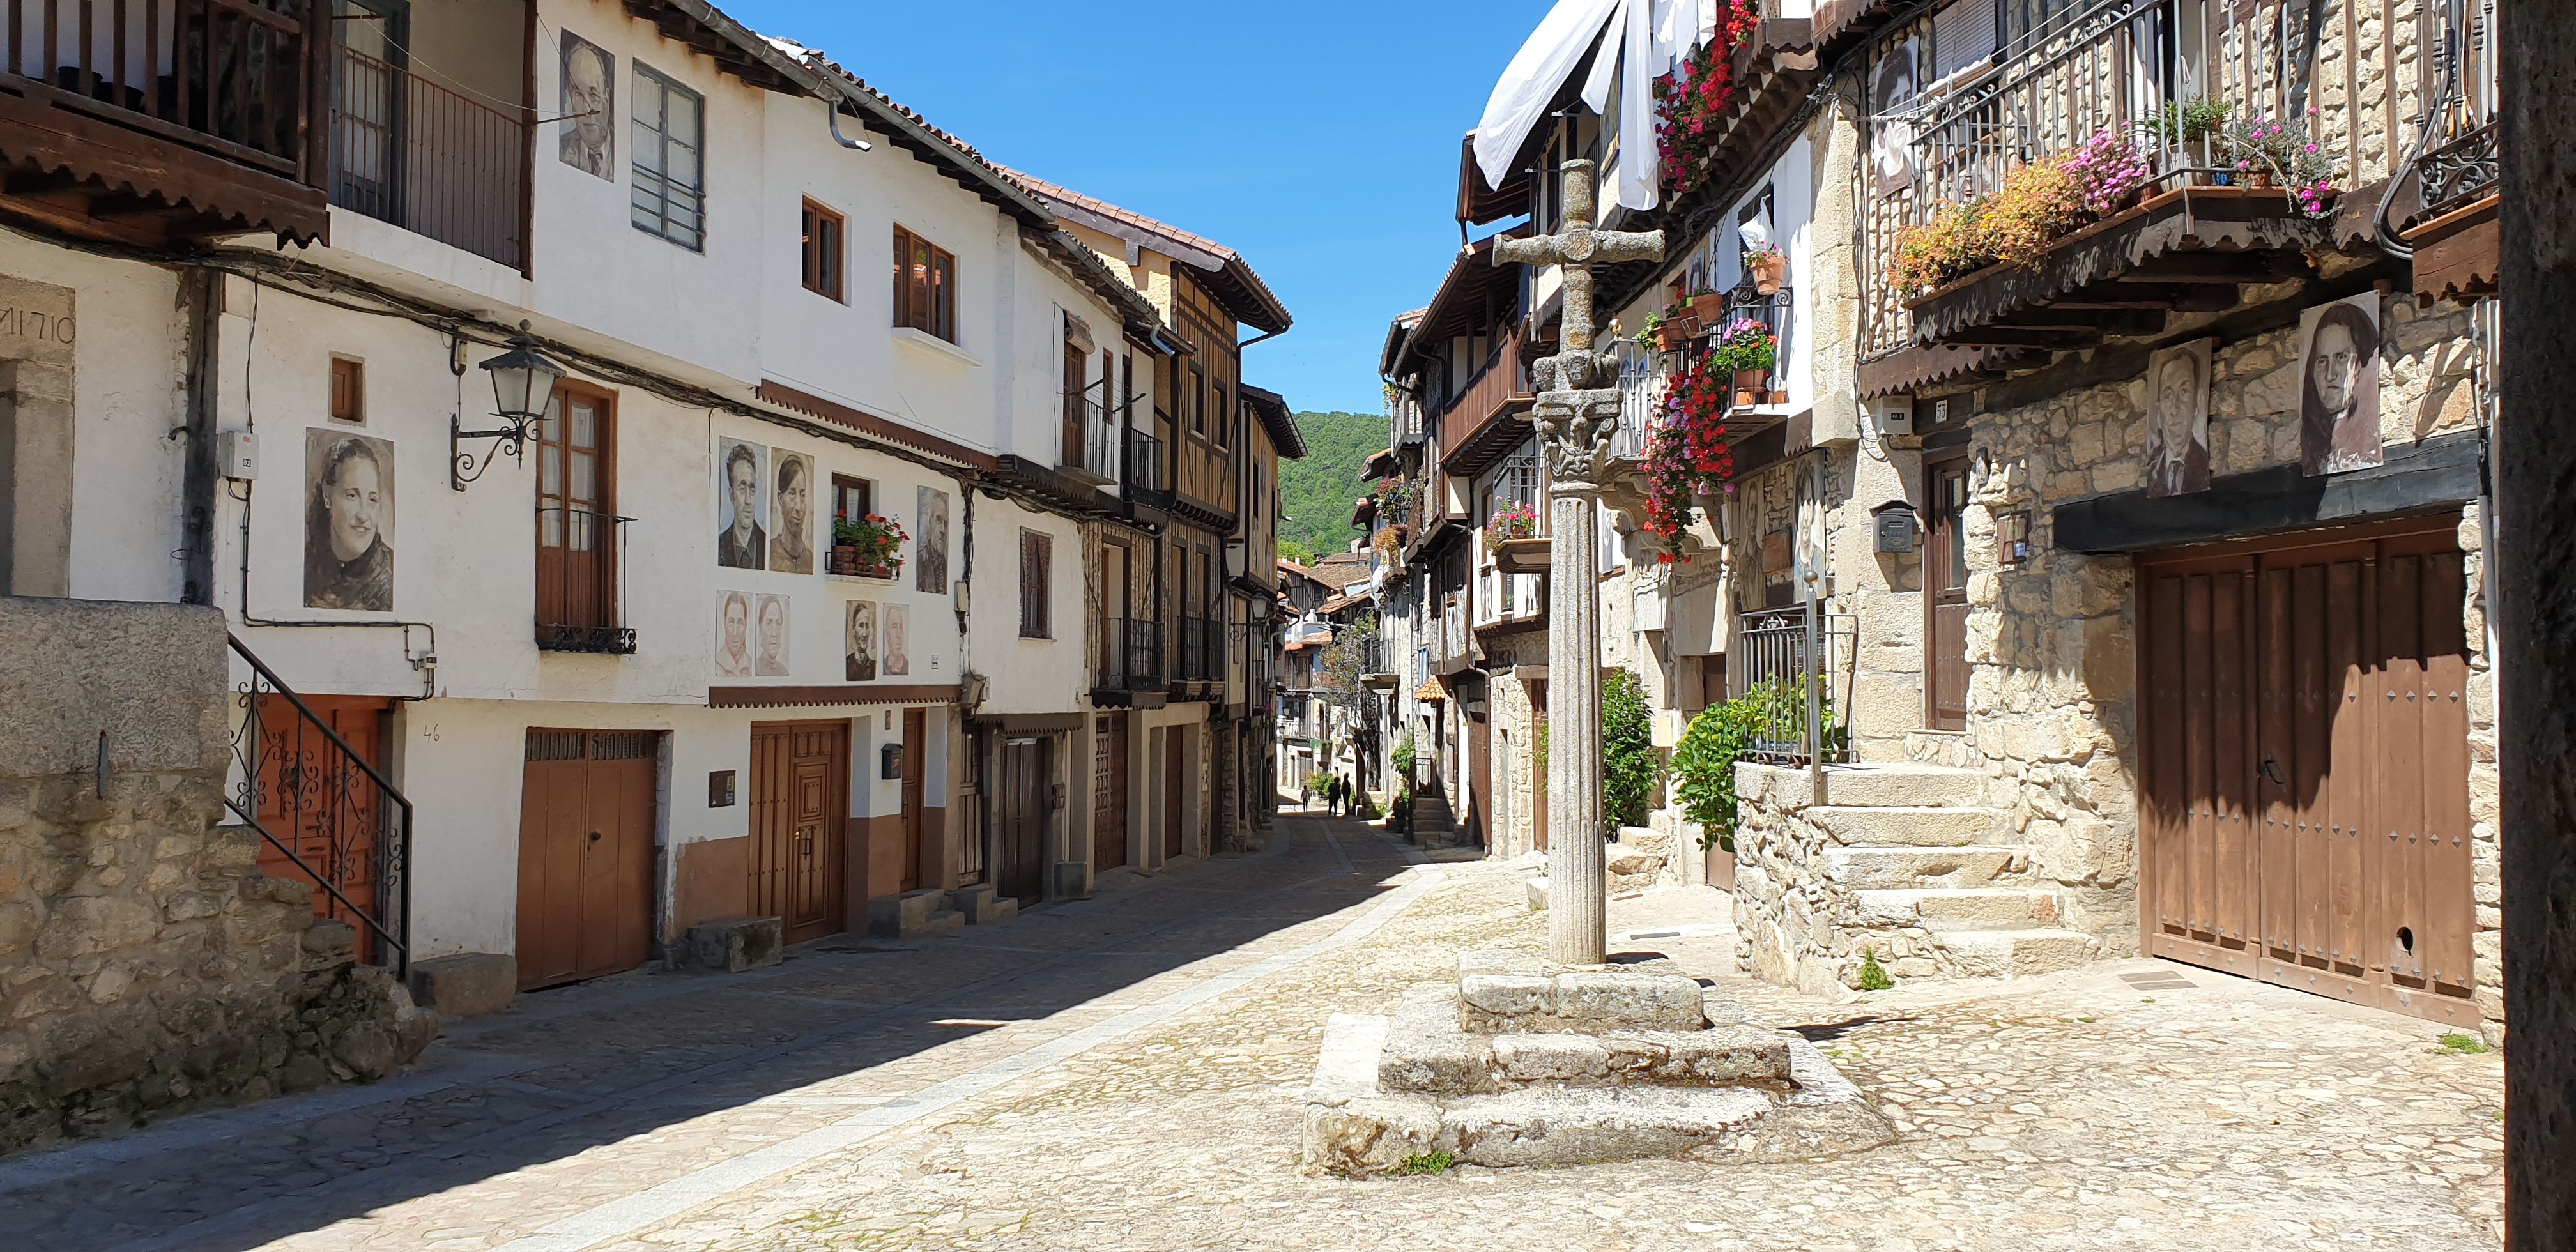 Mogarraz, el pueblo de Salamanca en el que las fotos de sus vecinos adornan las fachadas